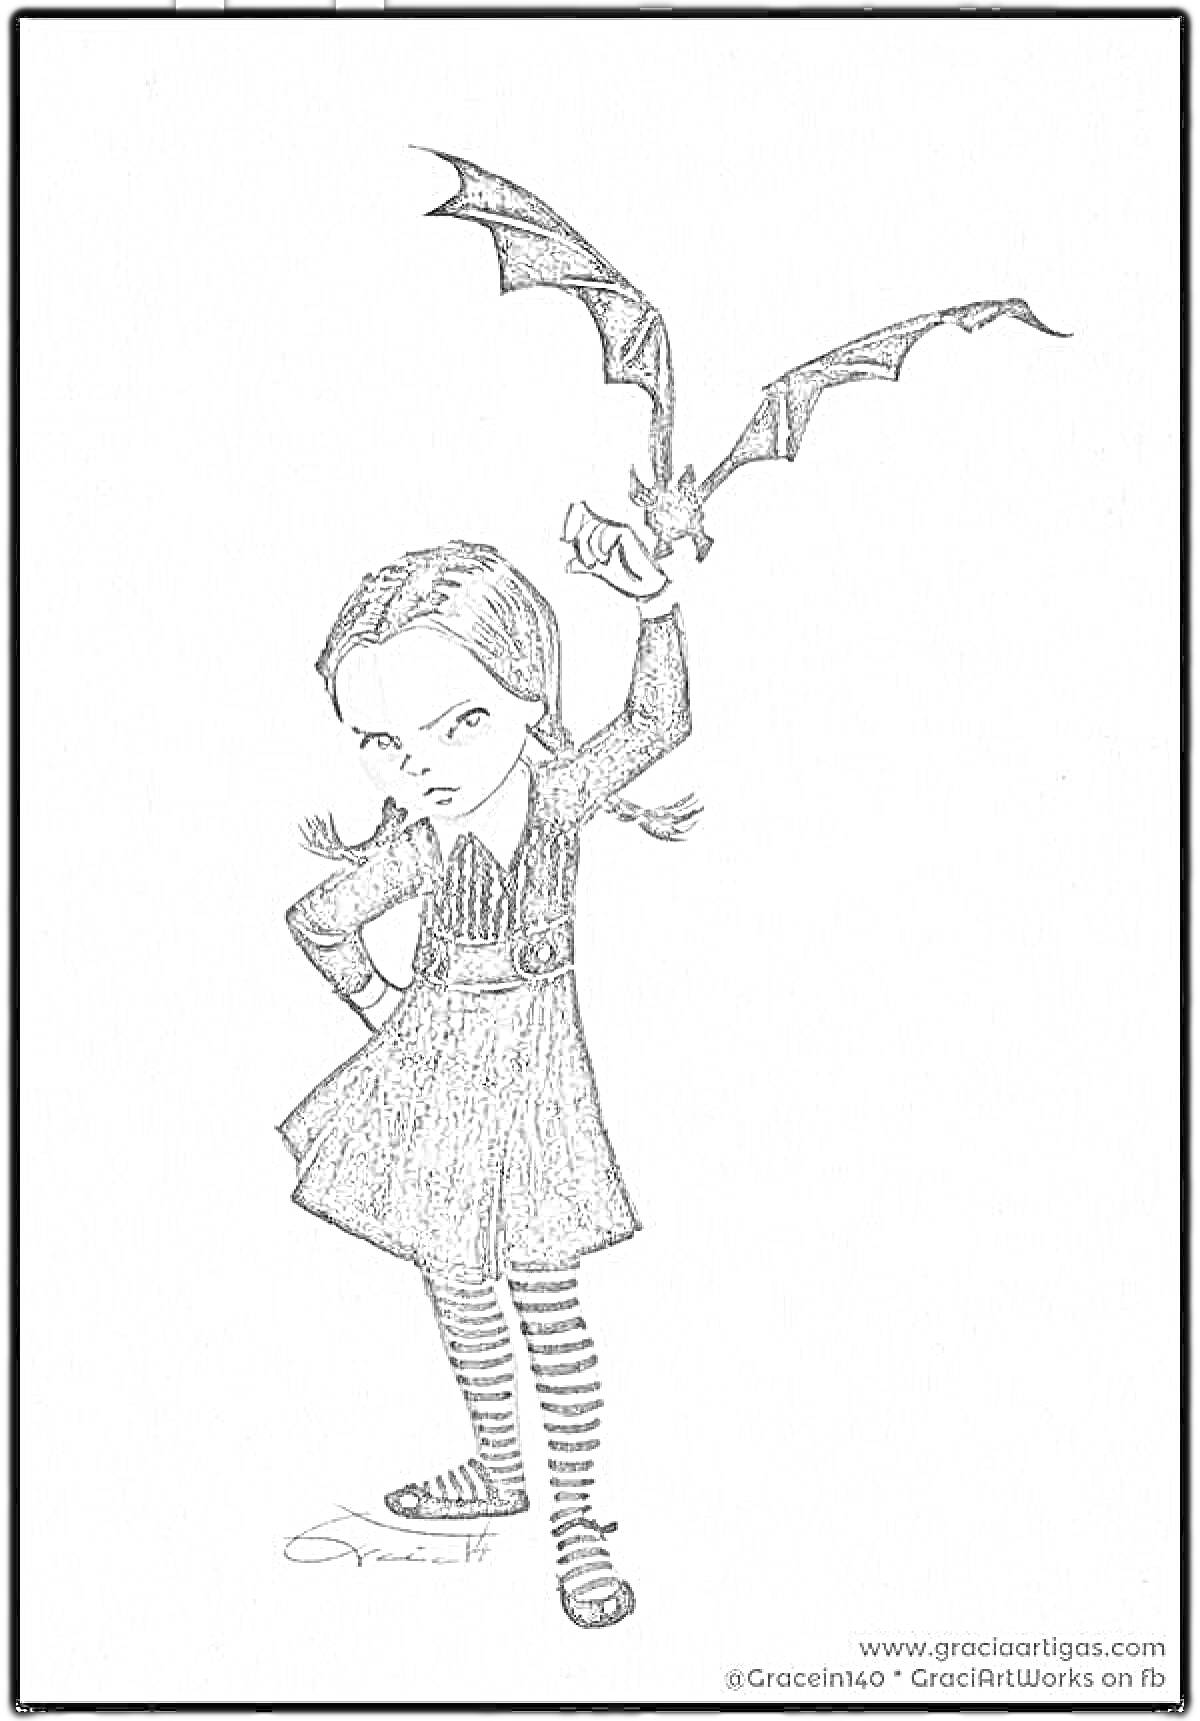 Девочка в чёрной одежде с косичками, держащая летучую мышь